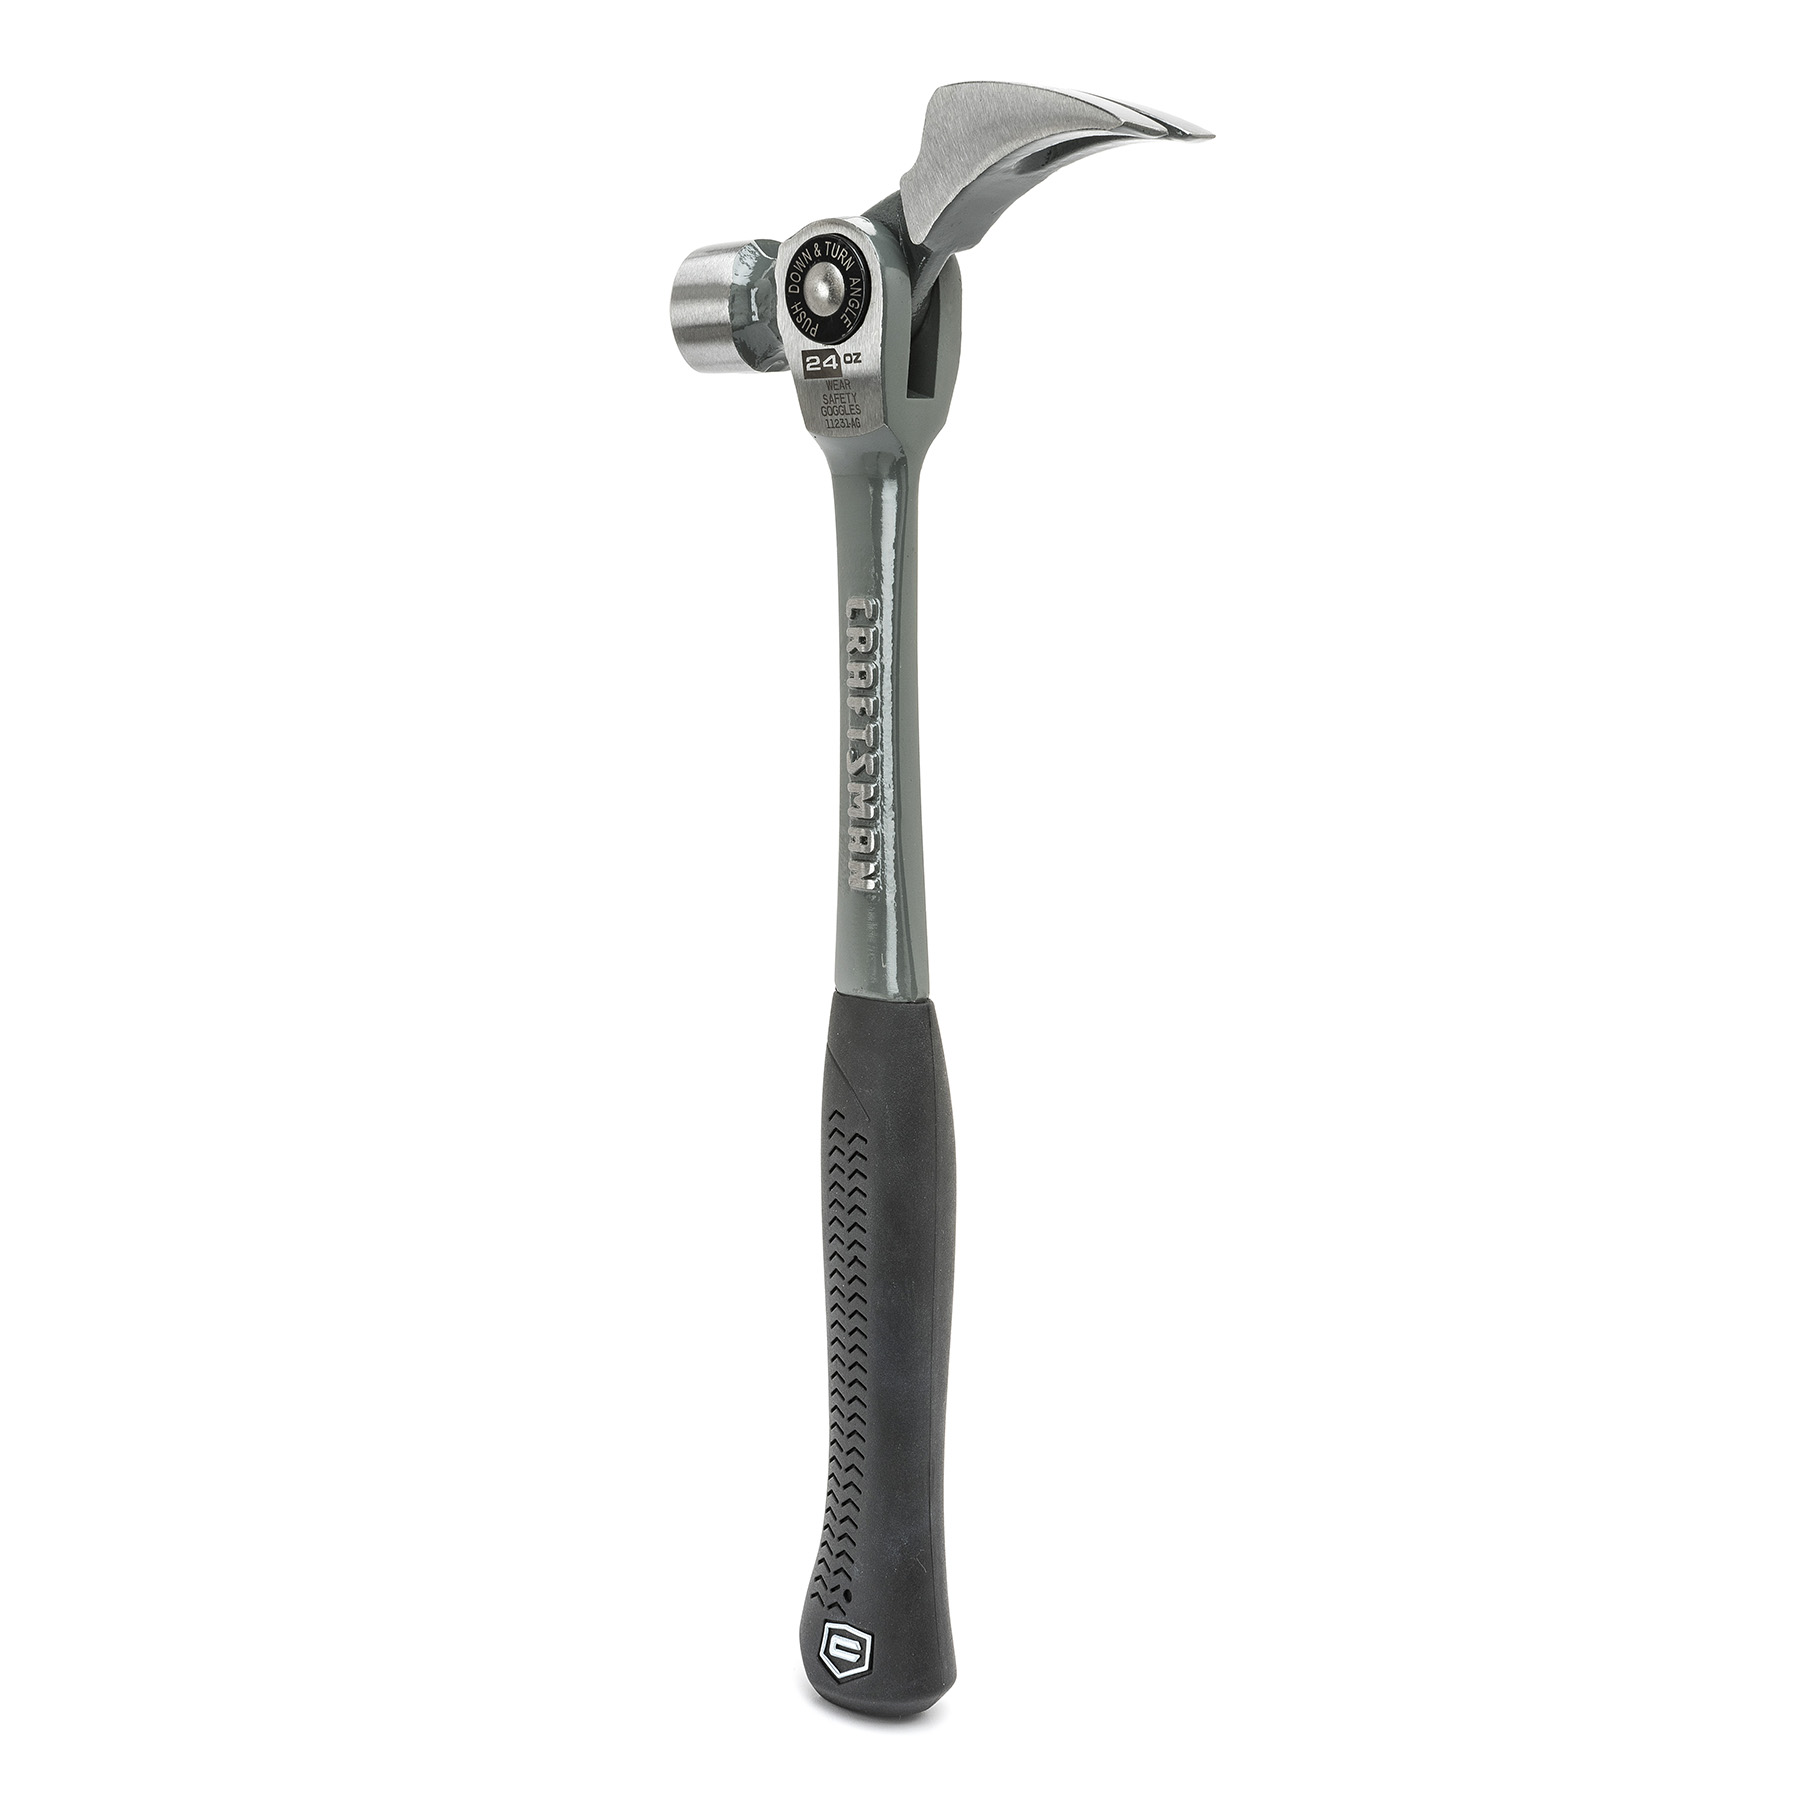 flex claw hammer price